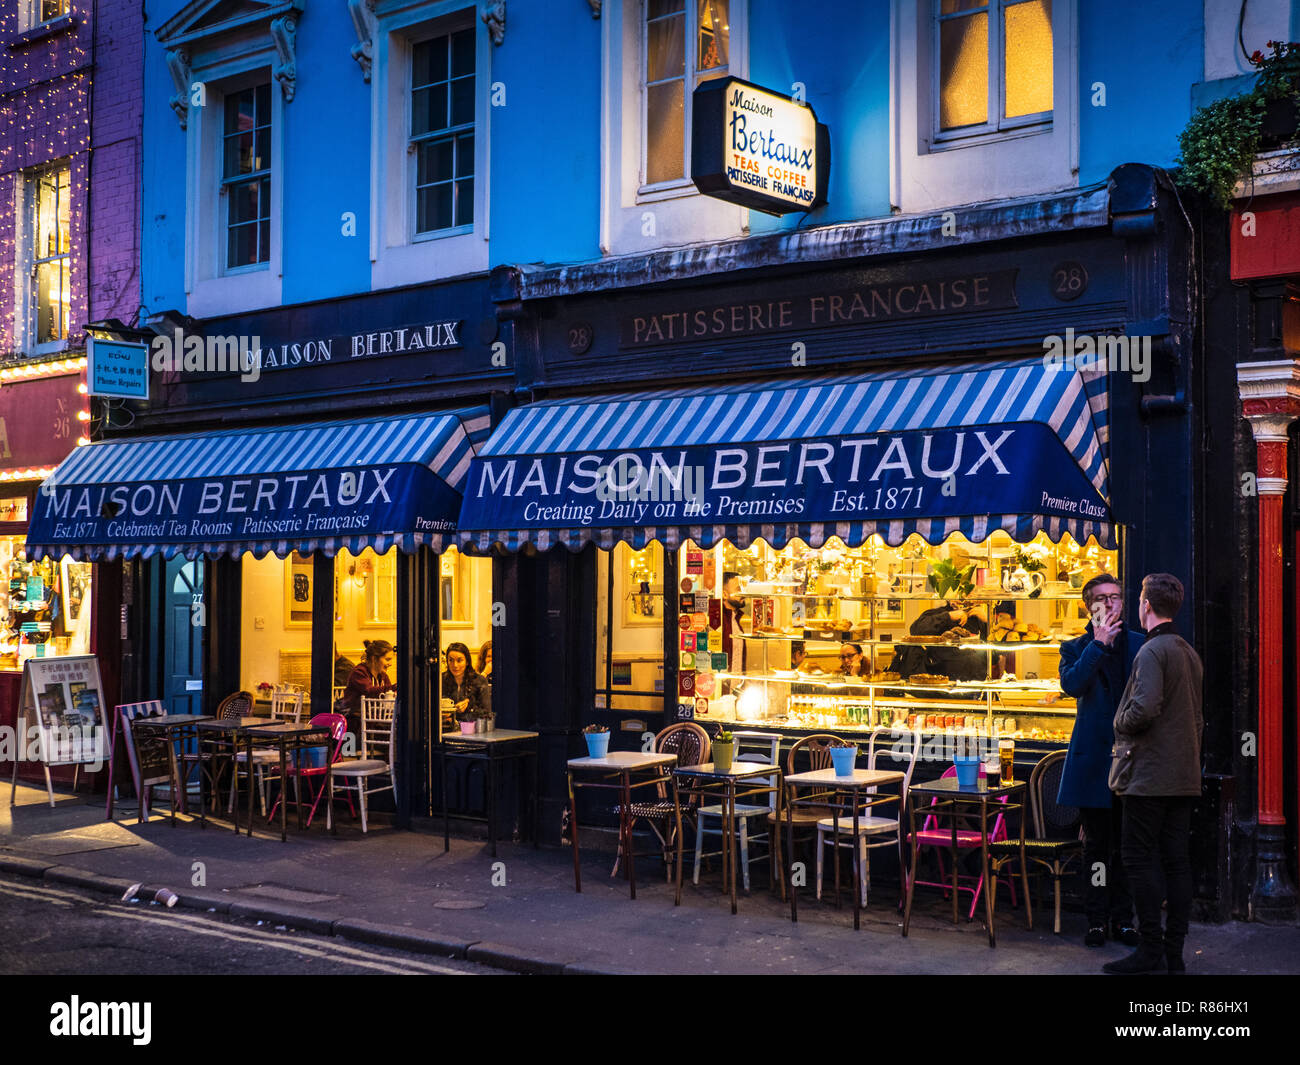 Maison Bertaux in der Griechischen Straße Soho, 1871 gegründet von einem Monsieur Bertaux aus Paris, ist der älteste Pâtisserie shop in London. Soho, Soho Wohn Stockfoto